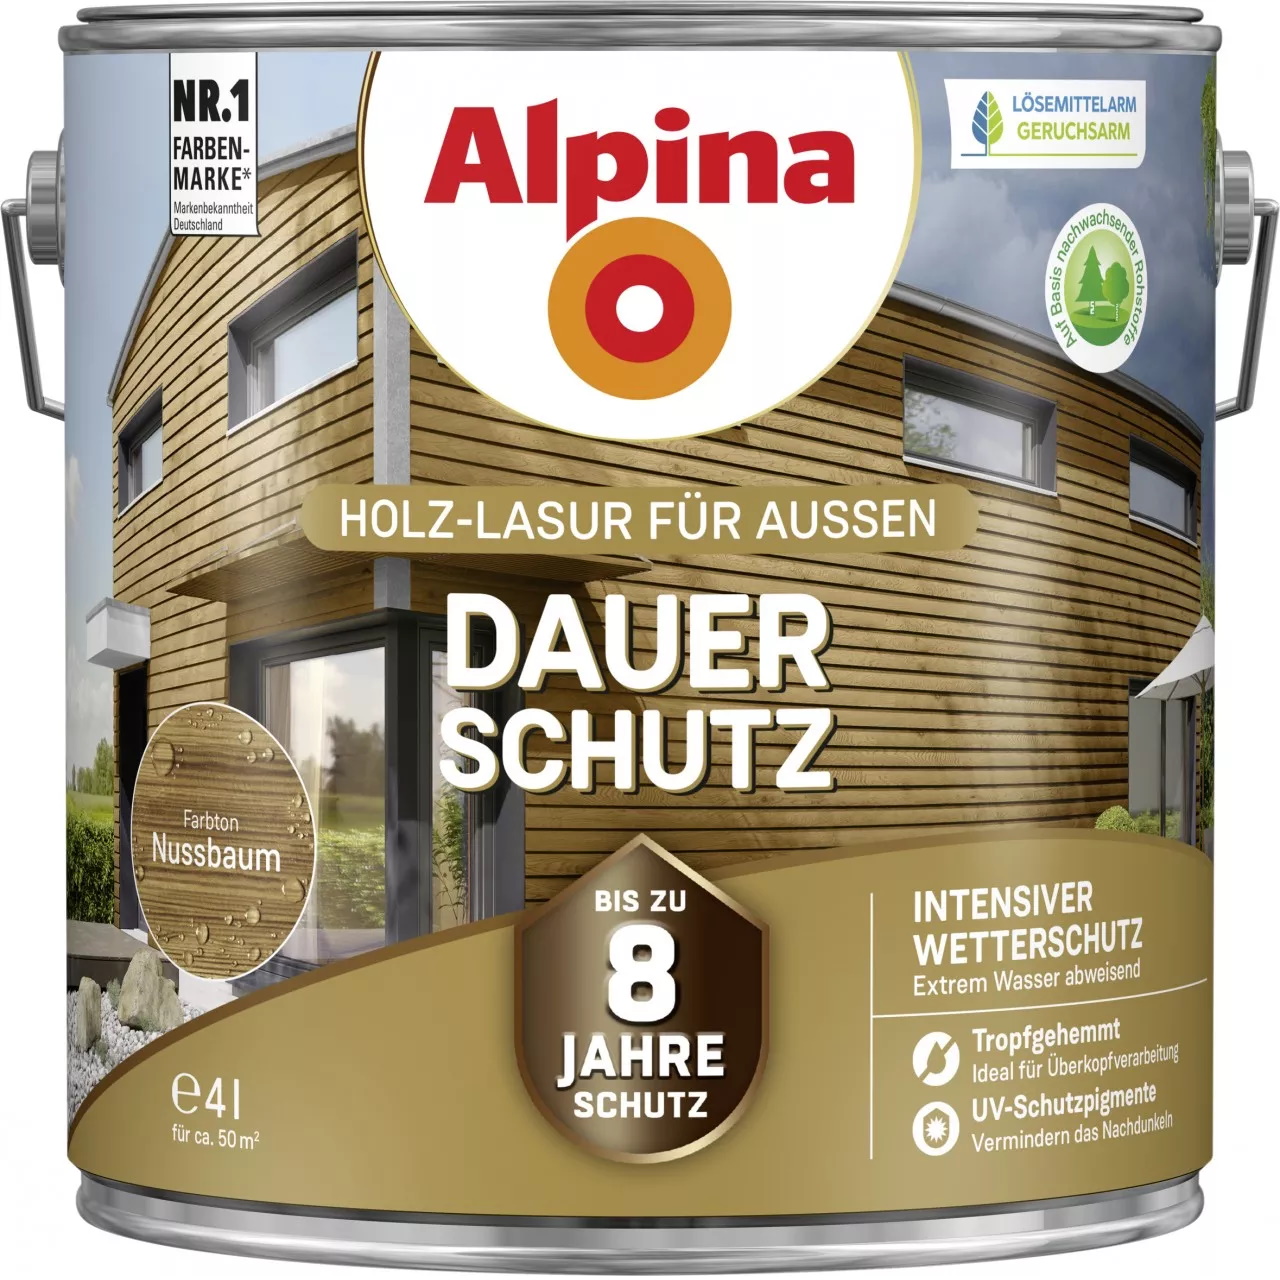 Alpina Dauer-Schutz Holz-Lasur für Außen Nussbaum 4 Liter